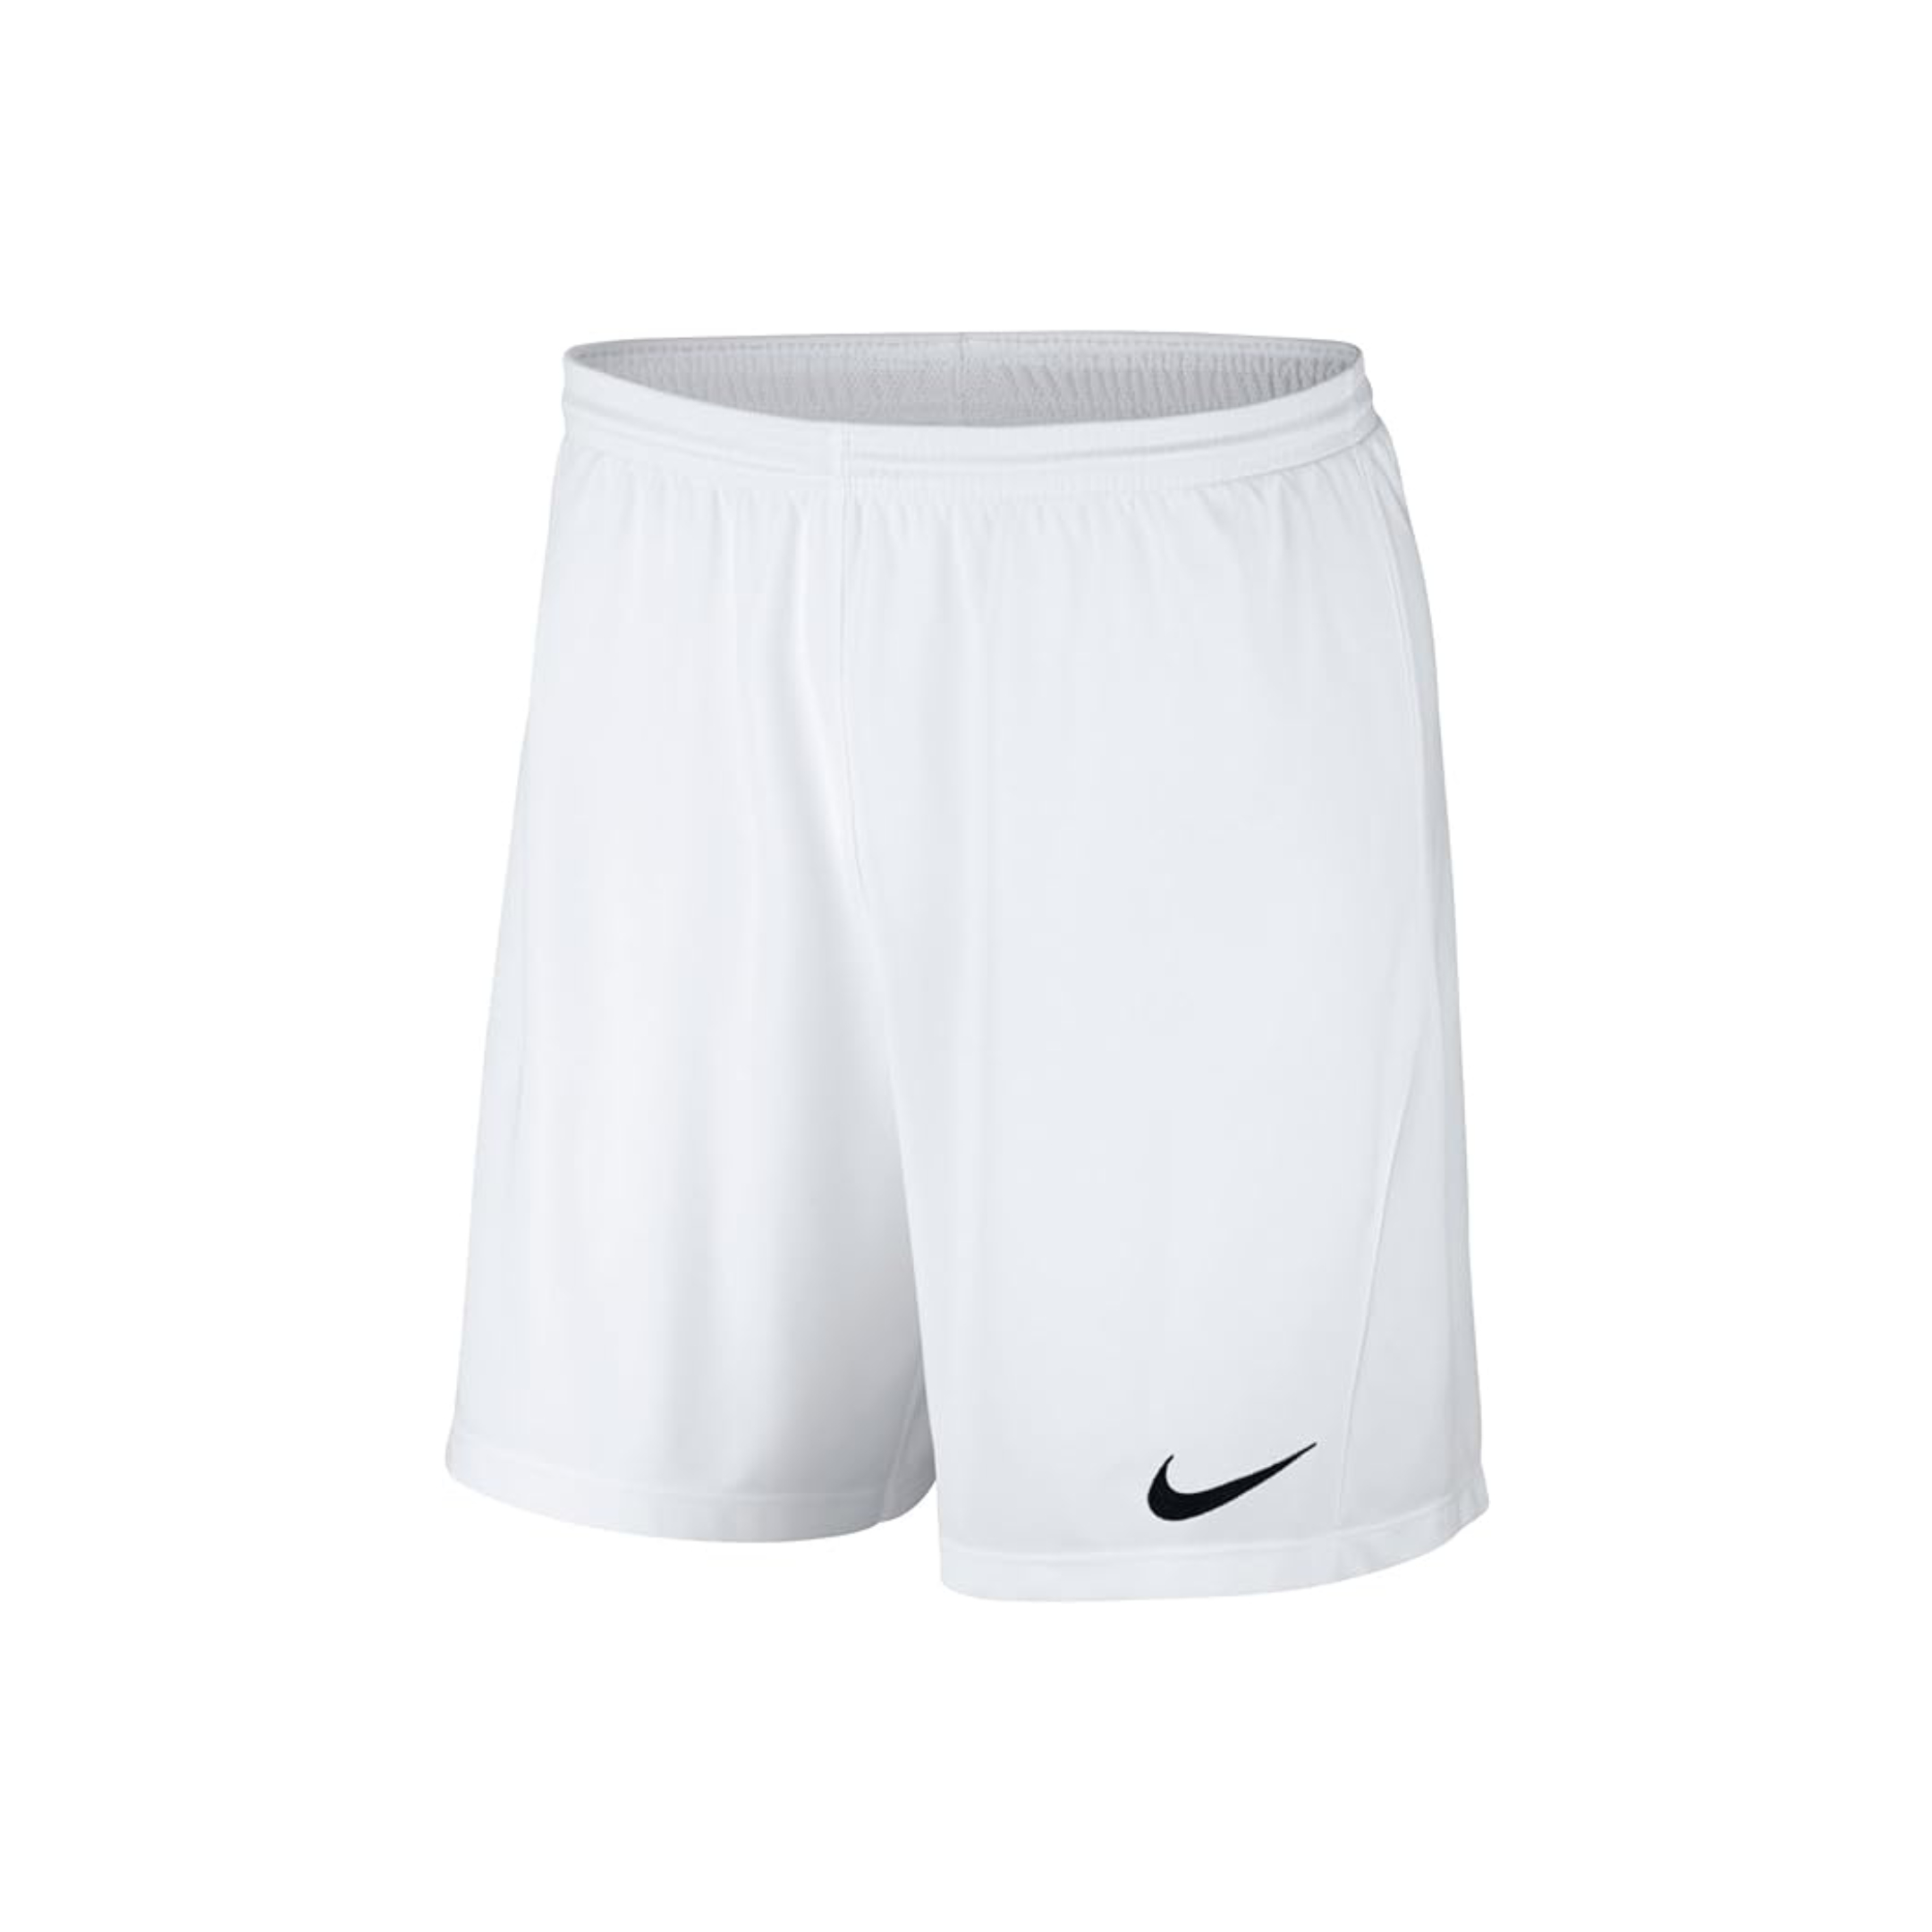 Nike BV6855 - Short De Football - Homme